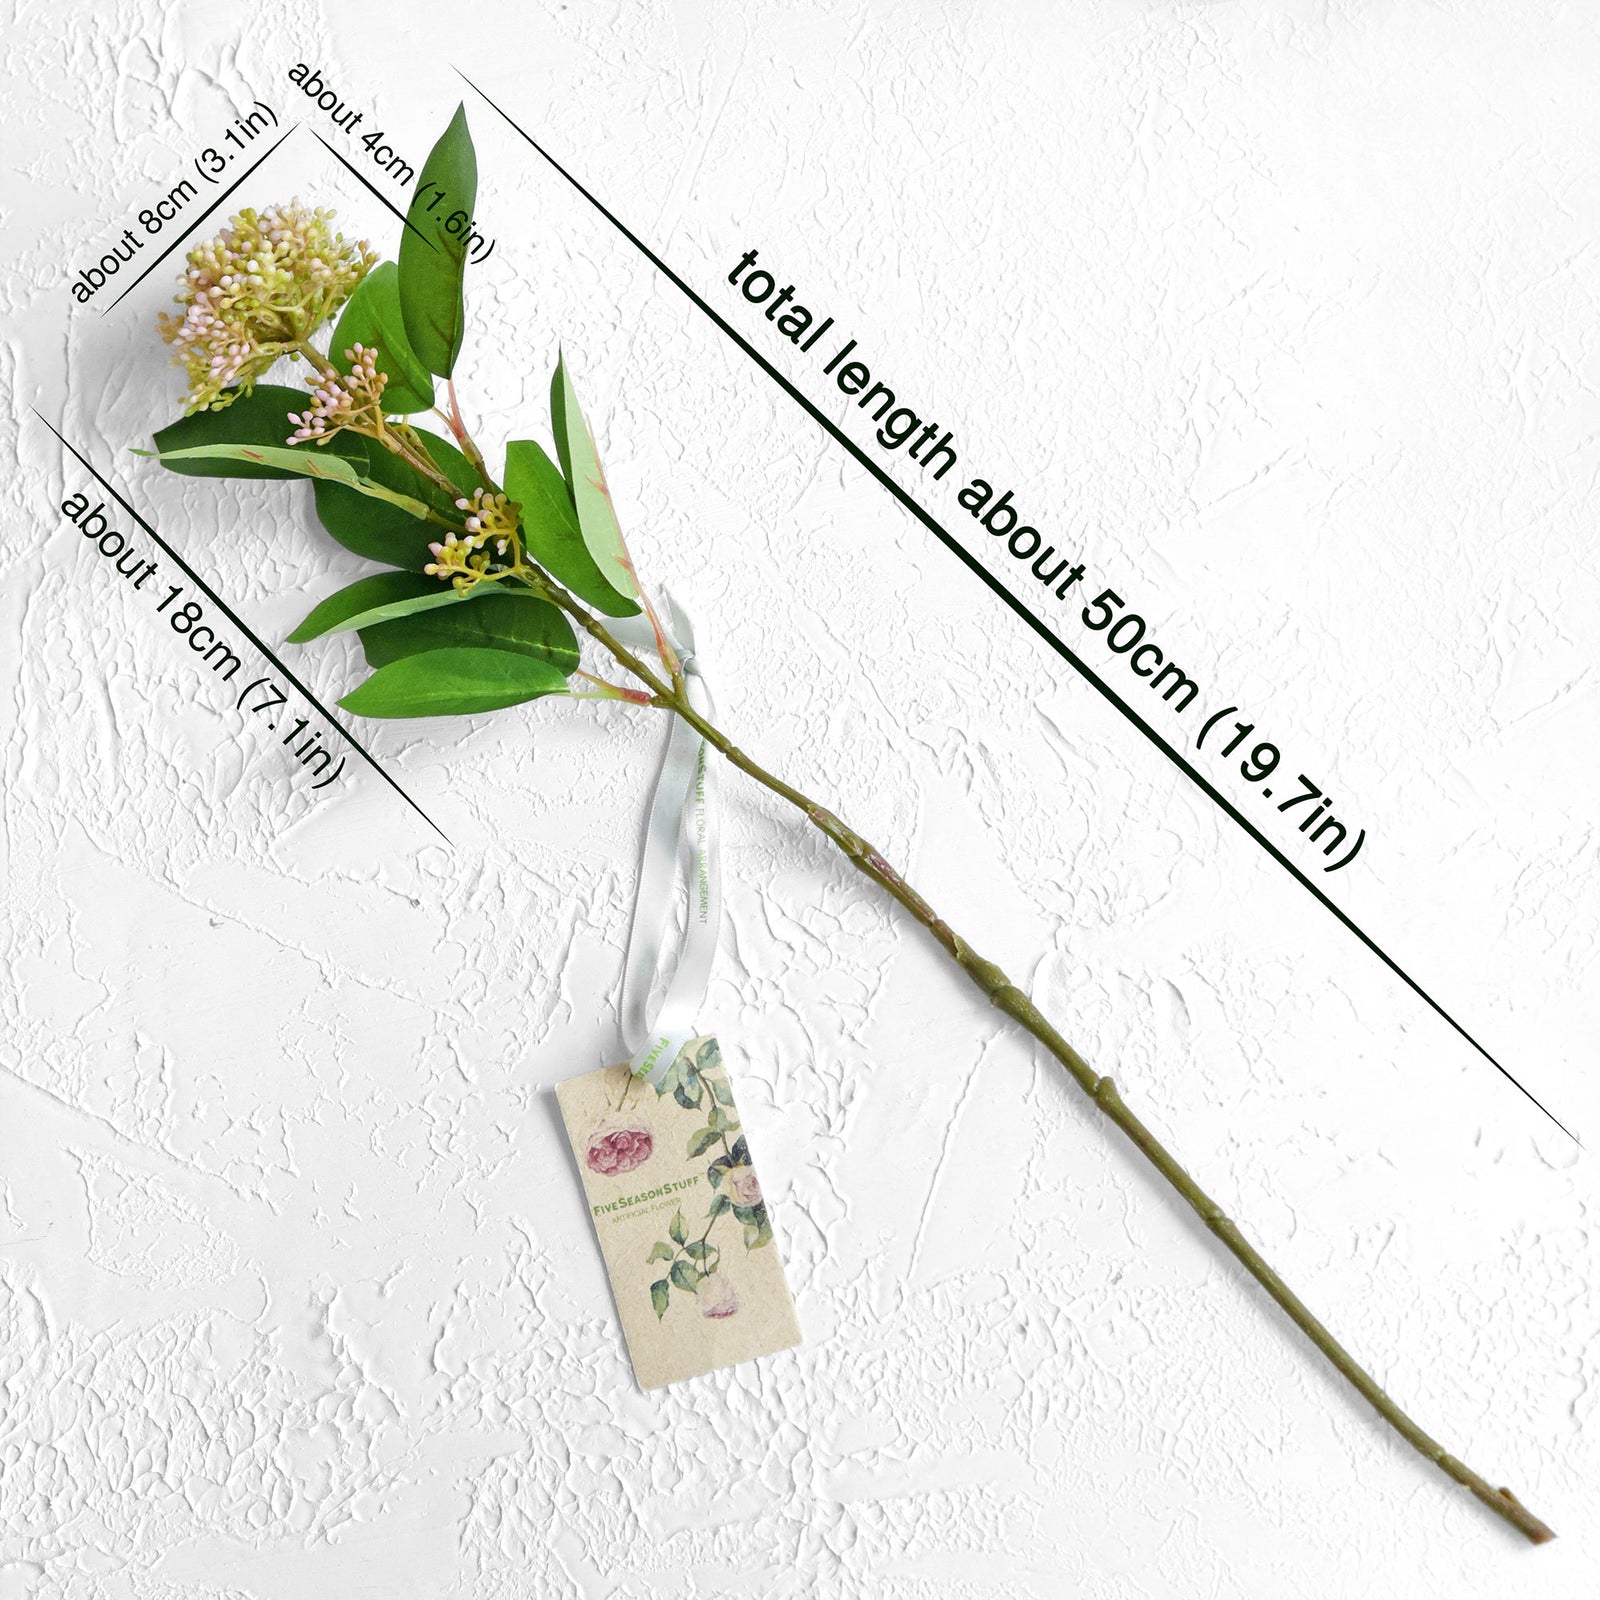 Viburnum (Little Bit Pink) Long Stem Artificial Silk Flowers, Filler Flower, Wedding, Home Decor, Arrangment 6 Stems